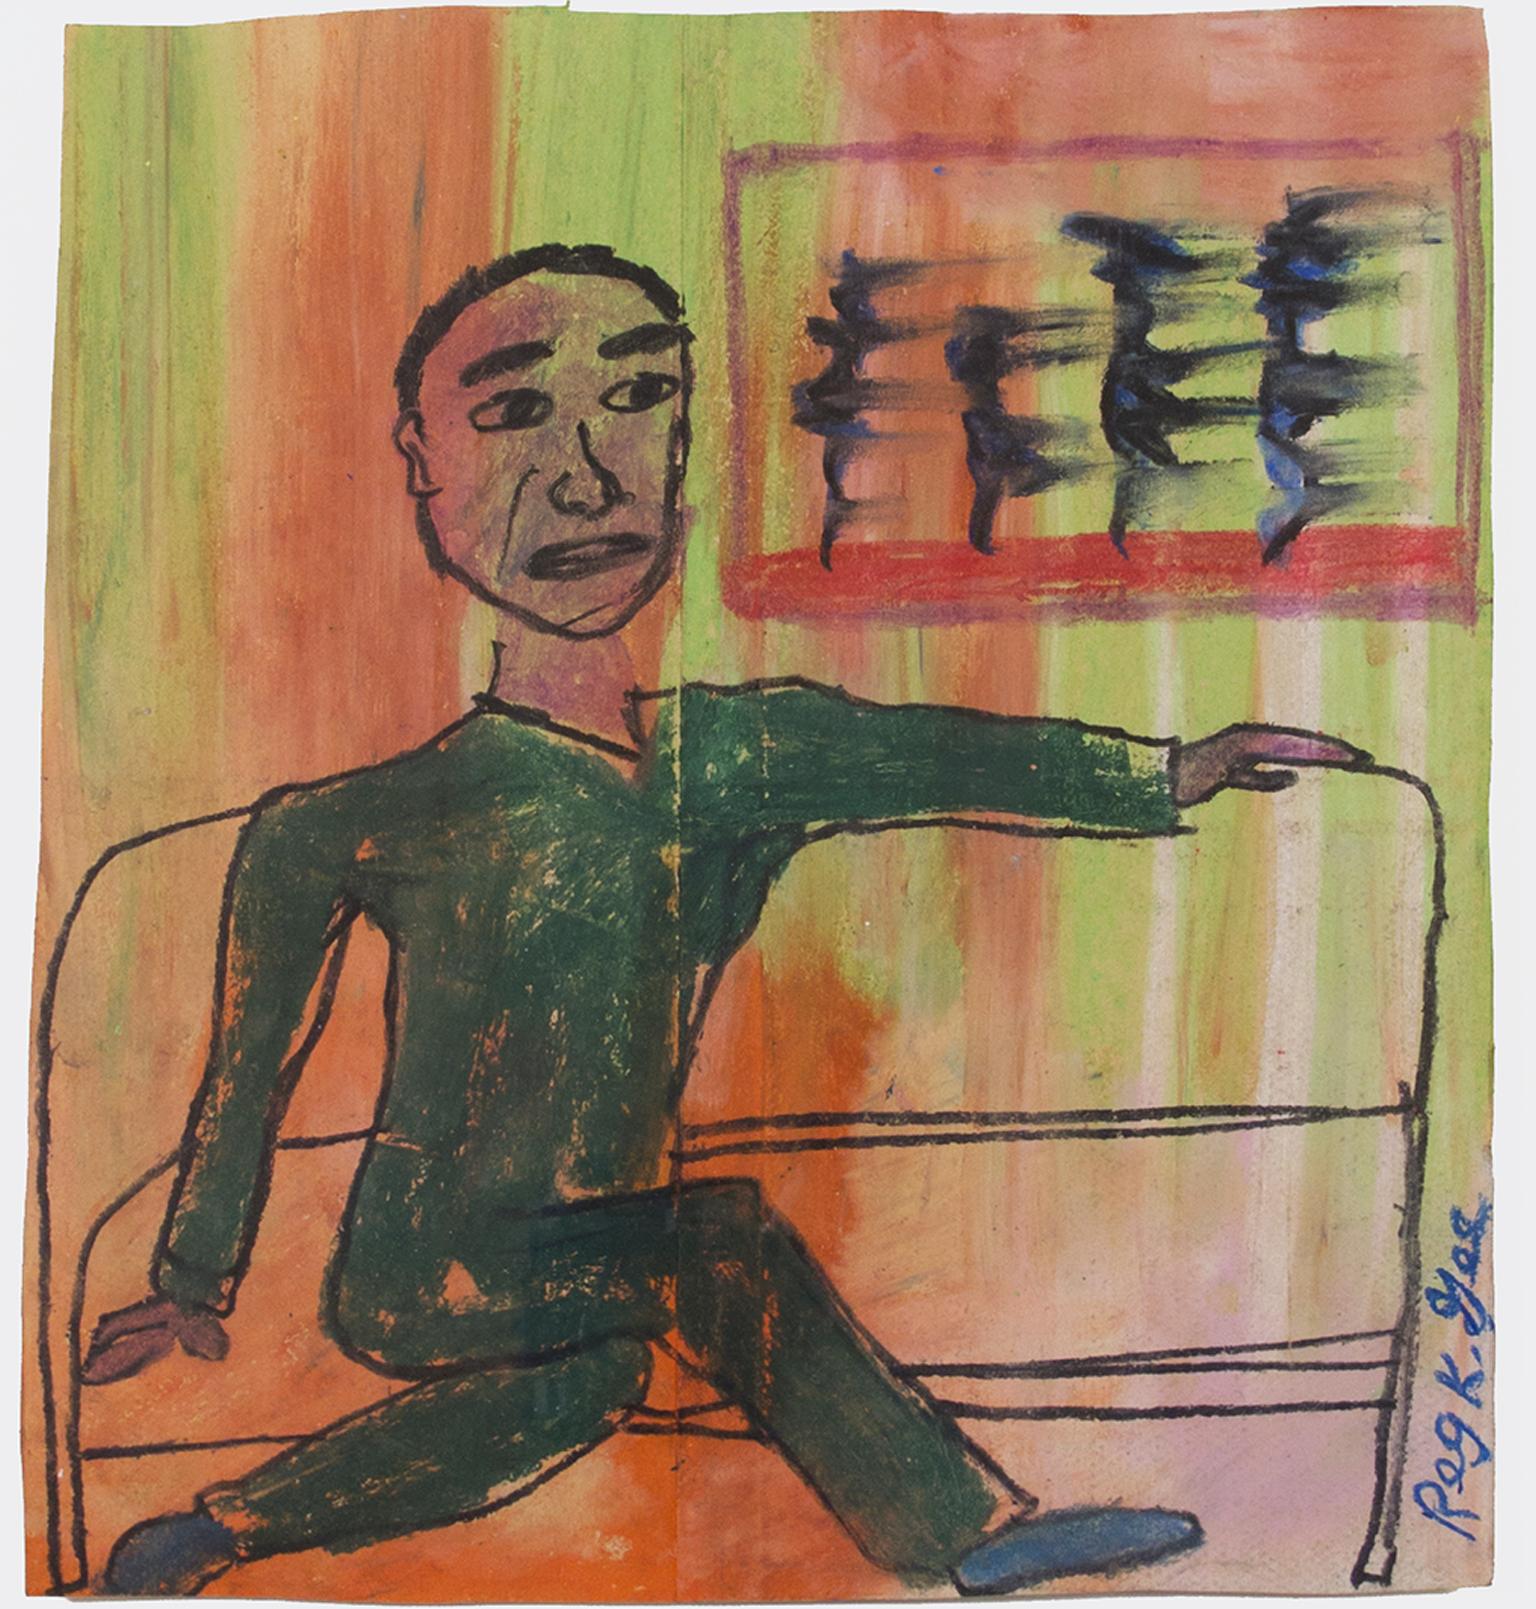 "Man on Express" est un dessin original au pastel à l'huile sur un sac d'épicerie de Reginald K. Gee. L'artiste a signé l'œuvre dans la marge inférieure droite. Elle représente un homme en costume vert qui se prélasse dans un train. Le fond est vert